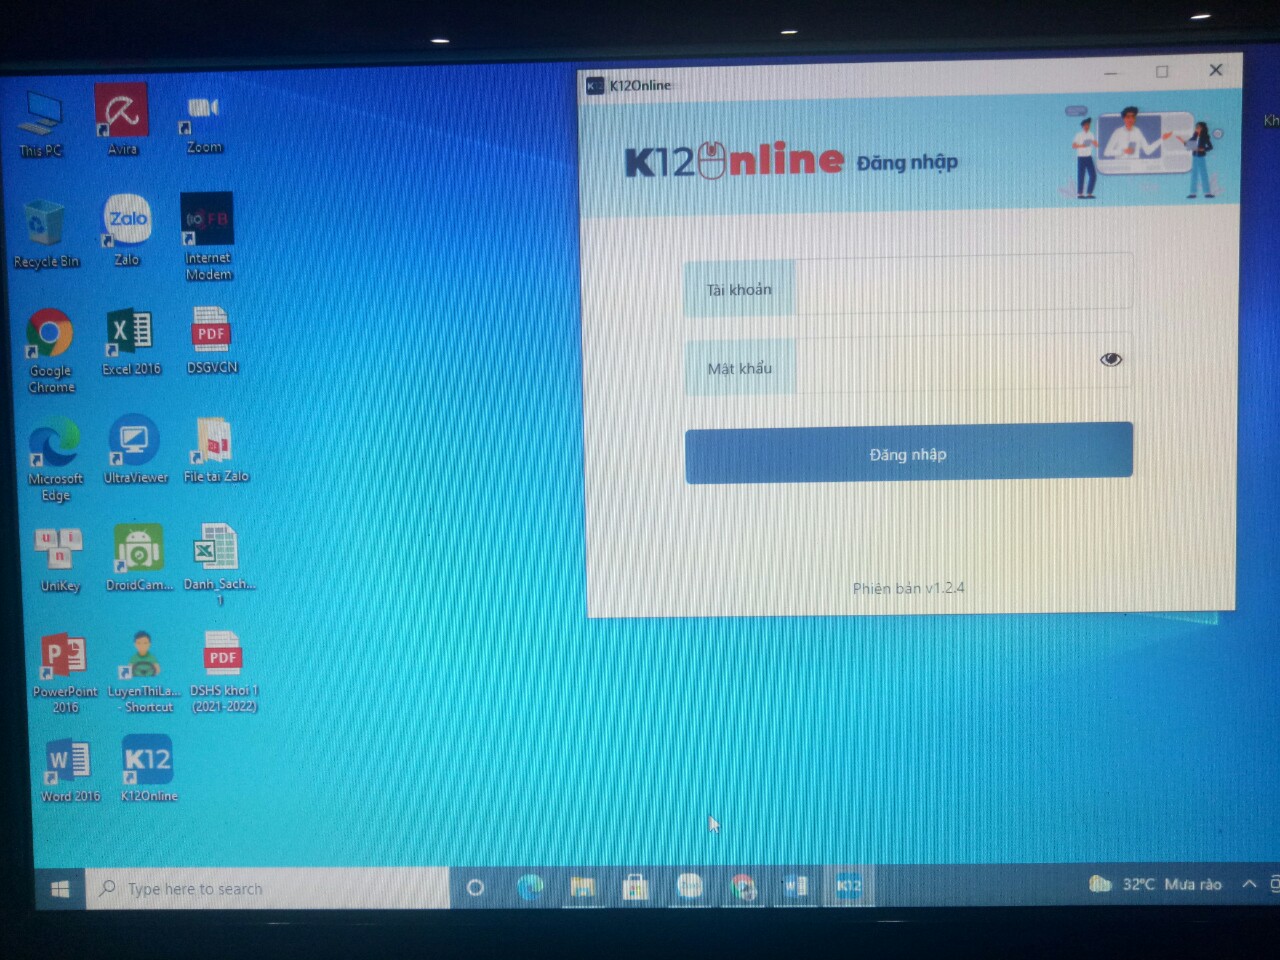 k12 online tren may tinh